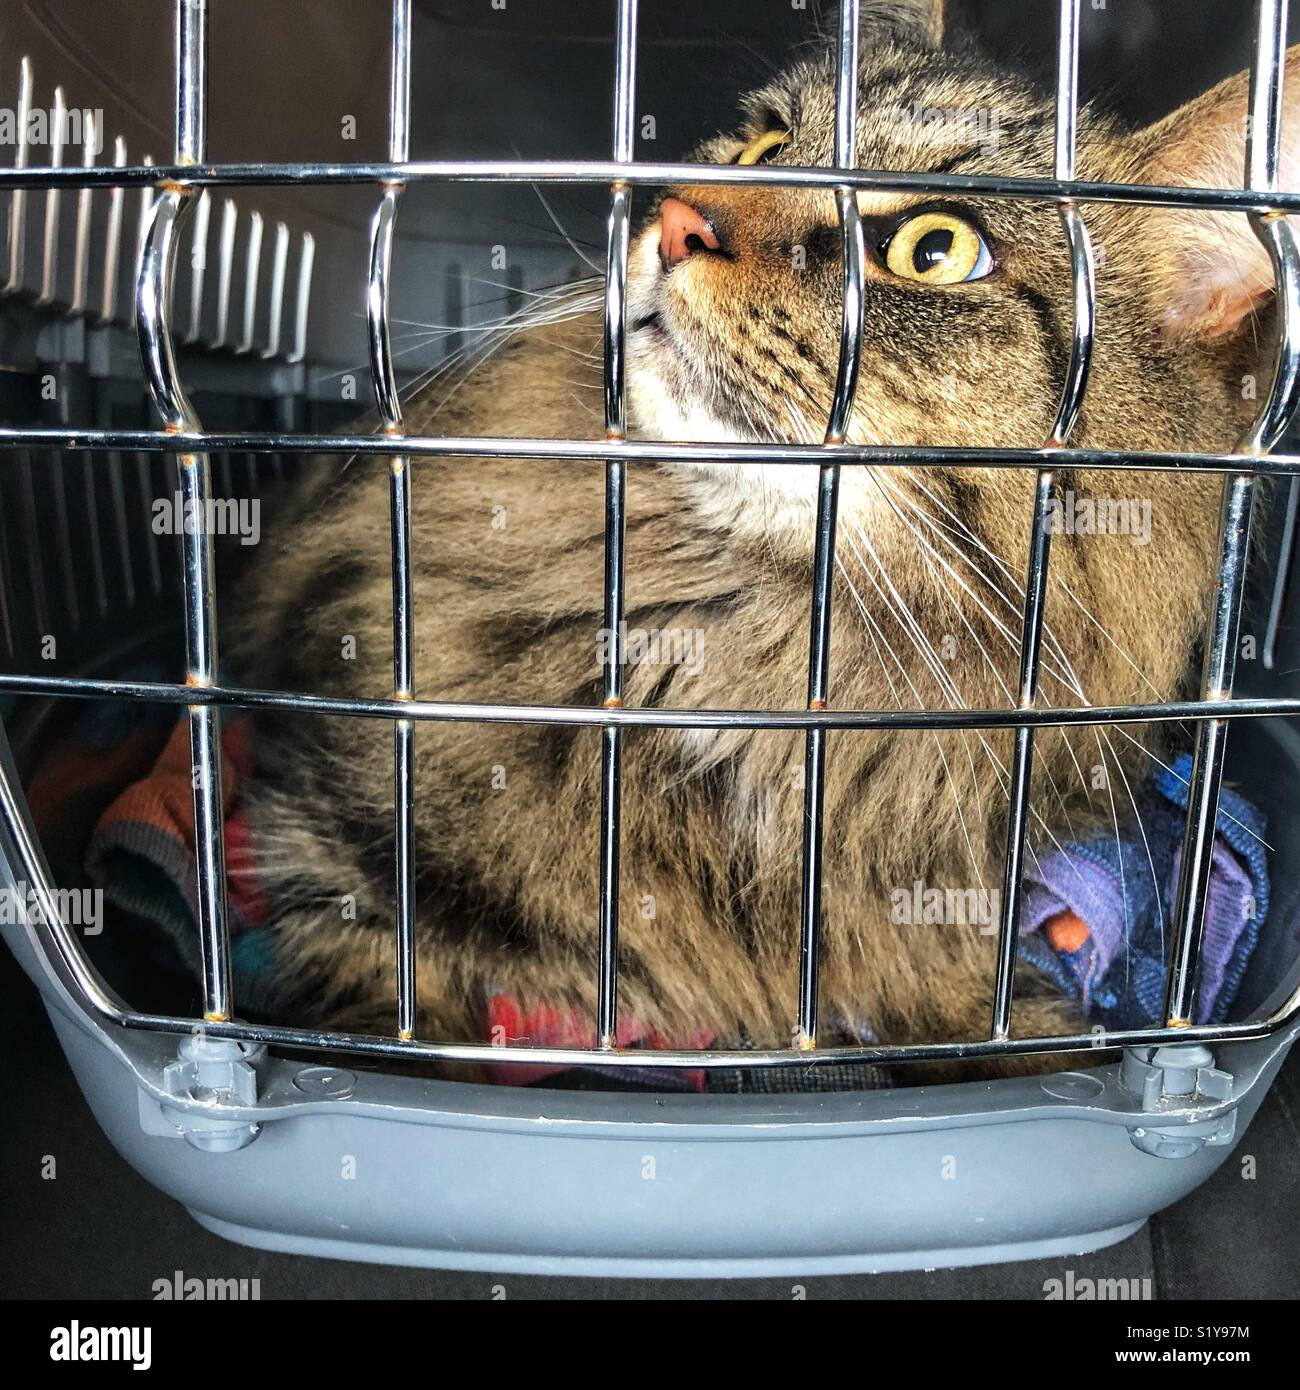 Cat voyageant dans une voiture à un transporteur de chat Banque D'Images